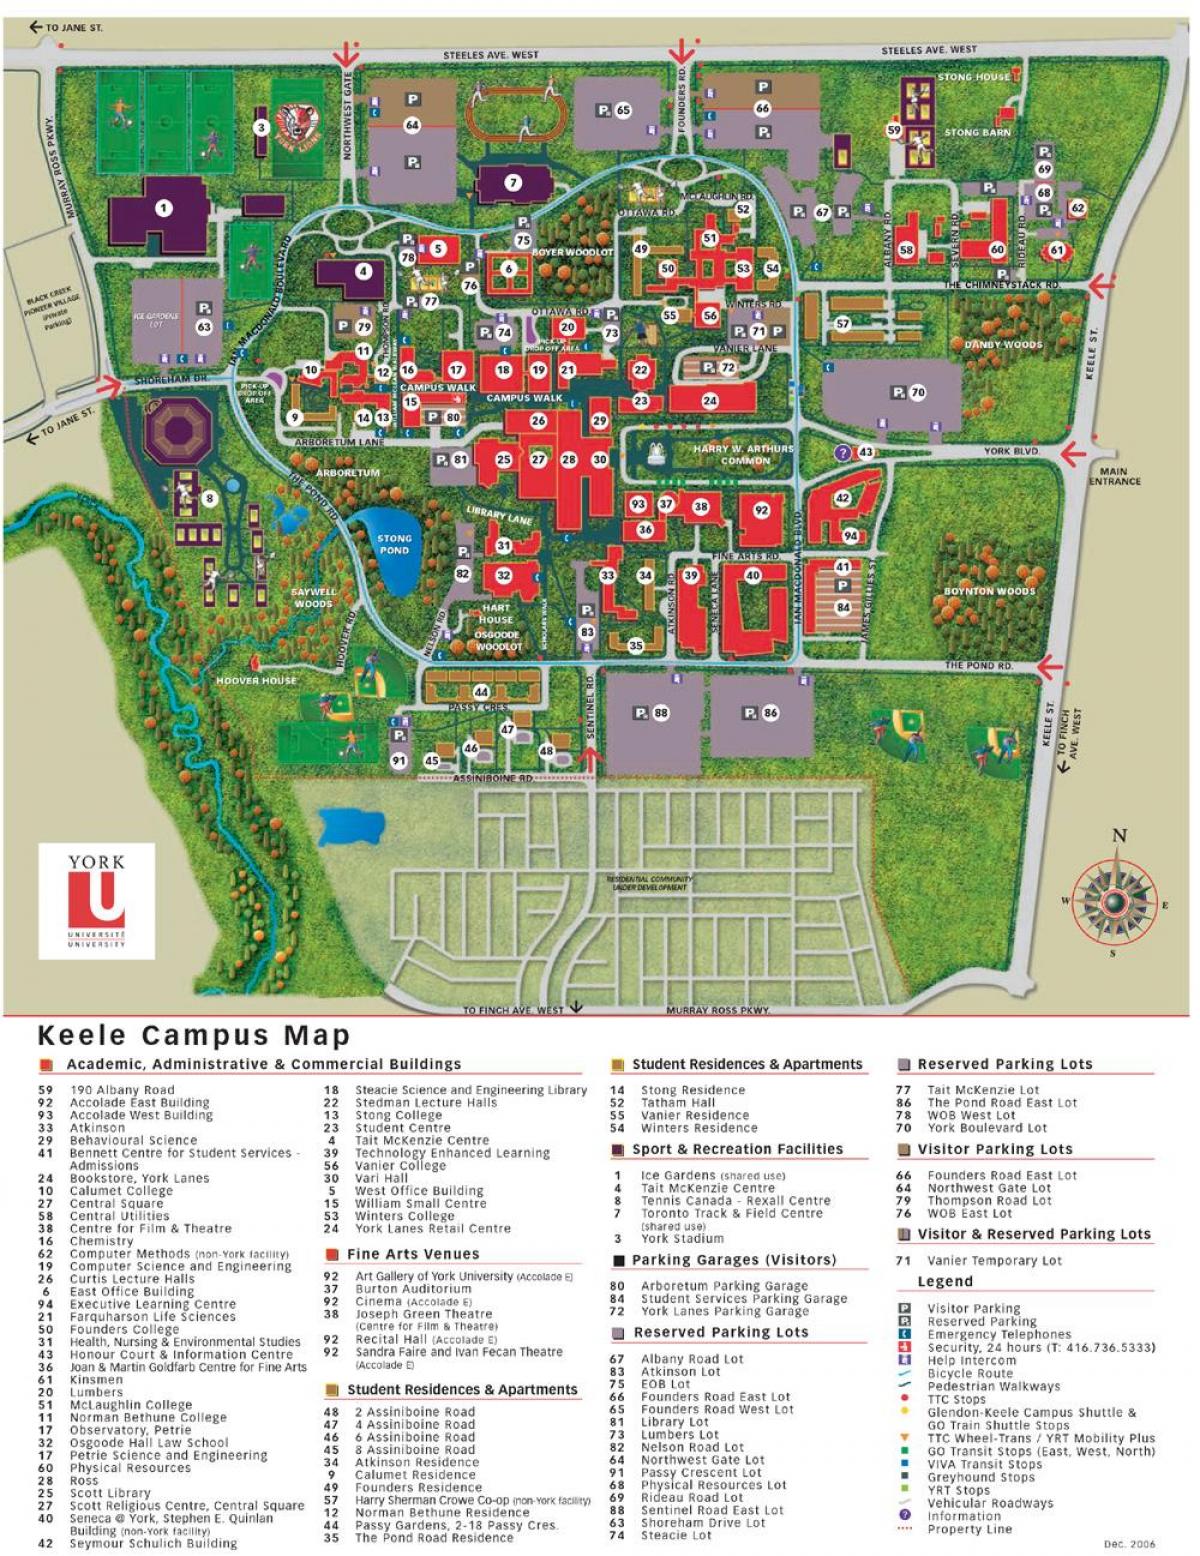 Mapa da universidade de York keele campus